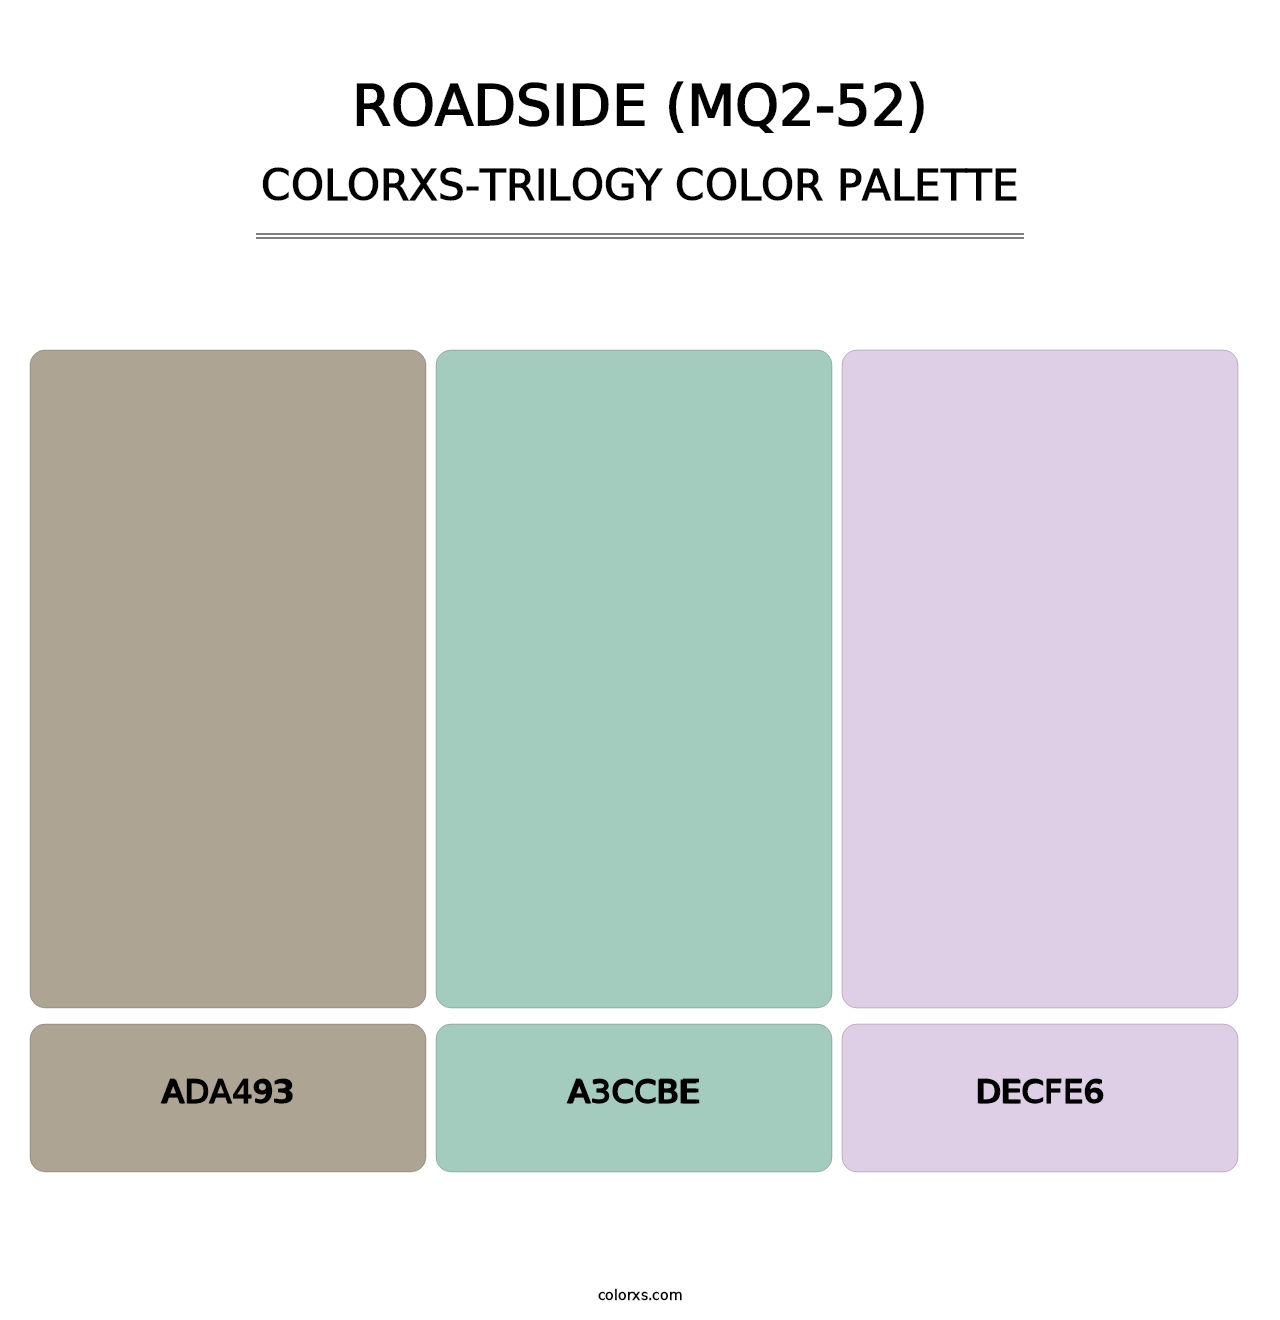 Roadside (MQ2-52) - Colorxs Trilogy Palette